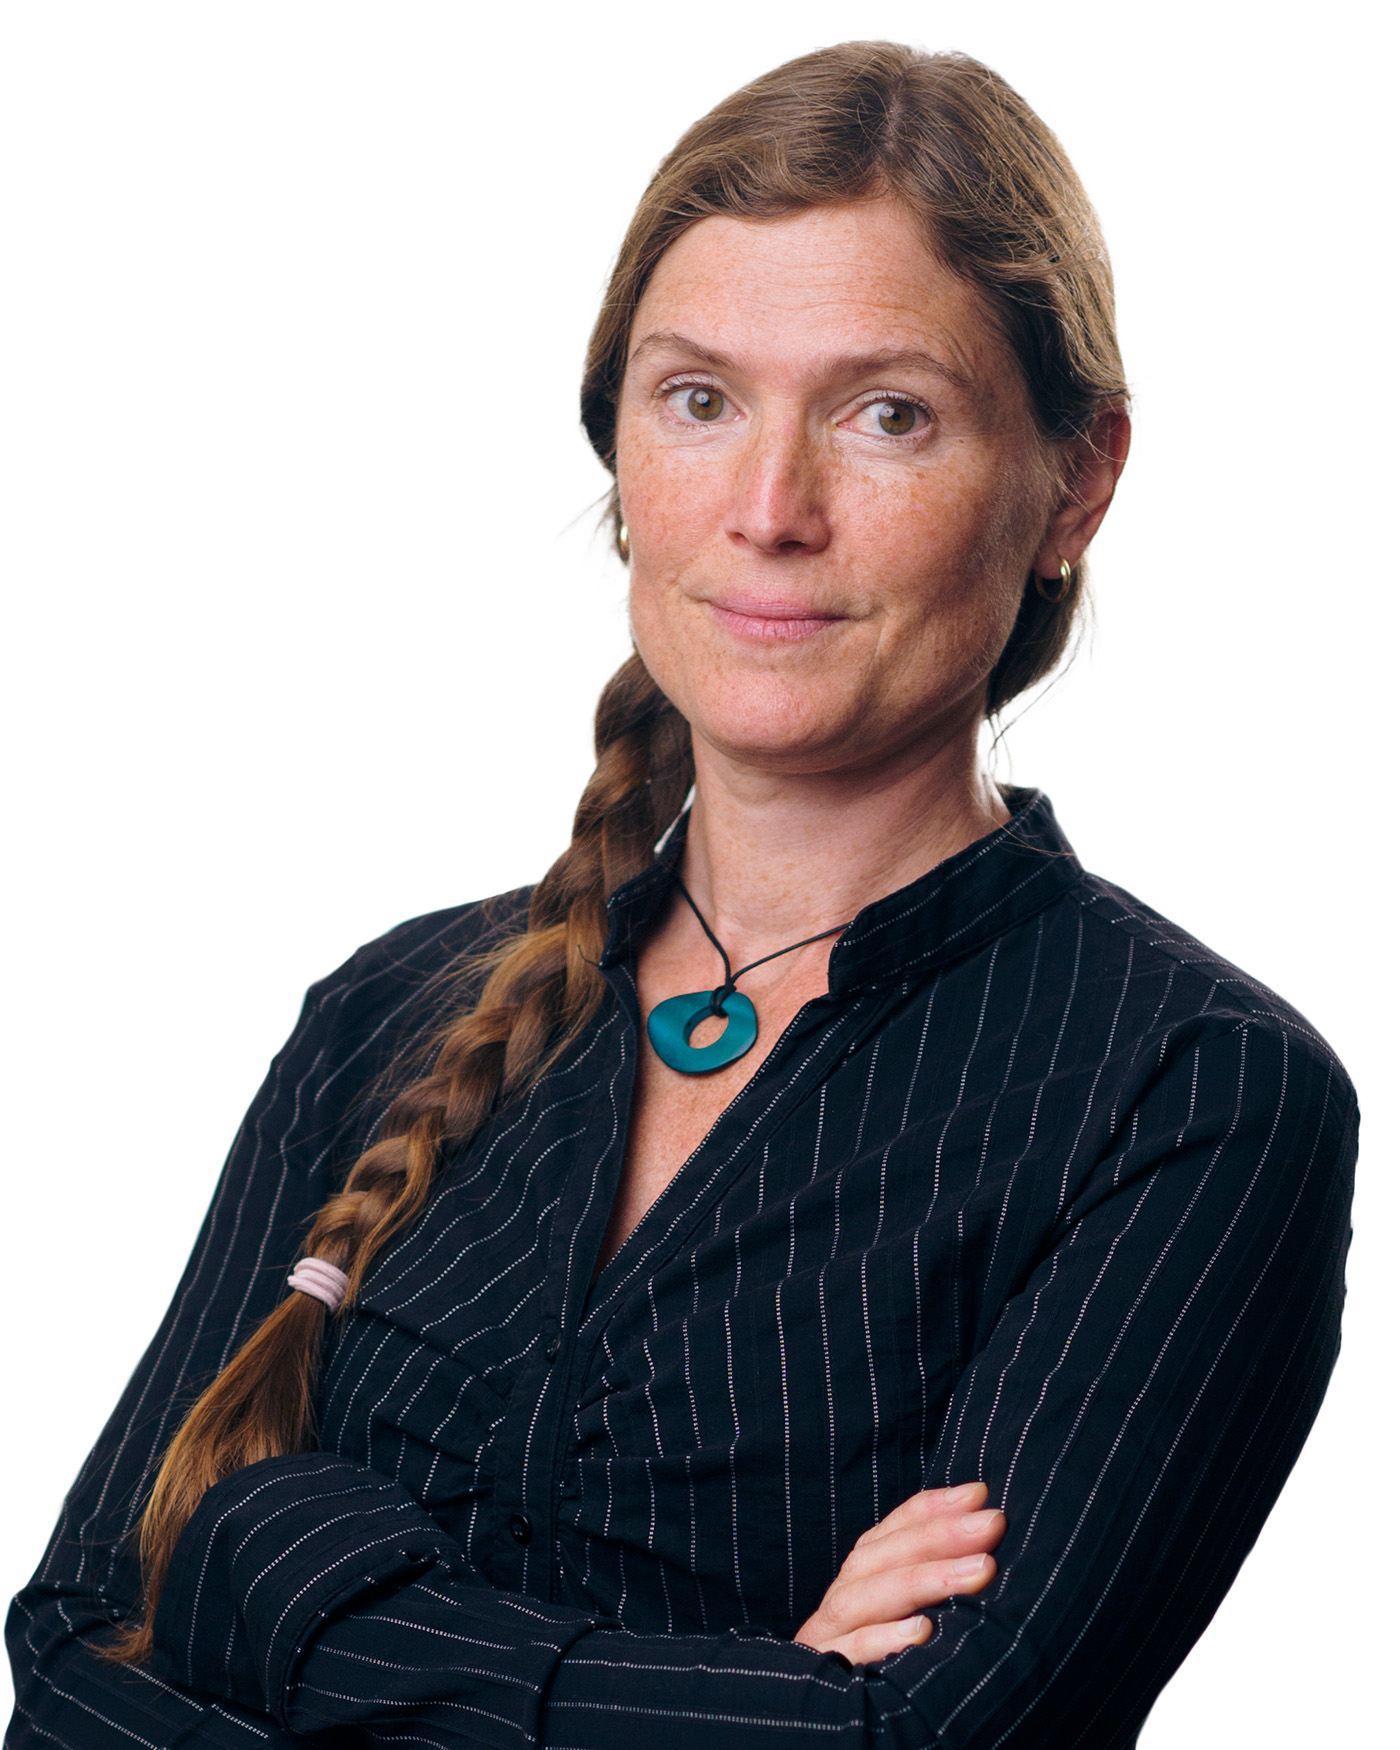 Michelle Tun von Gyllenpalm, expert på energipolicy från Svenskt näringsliv.